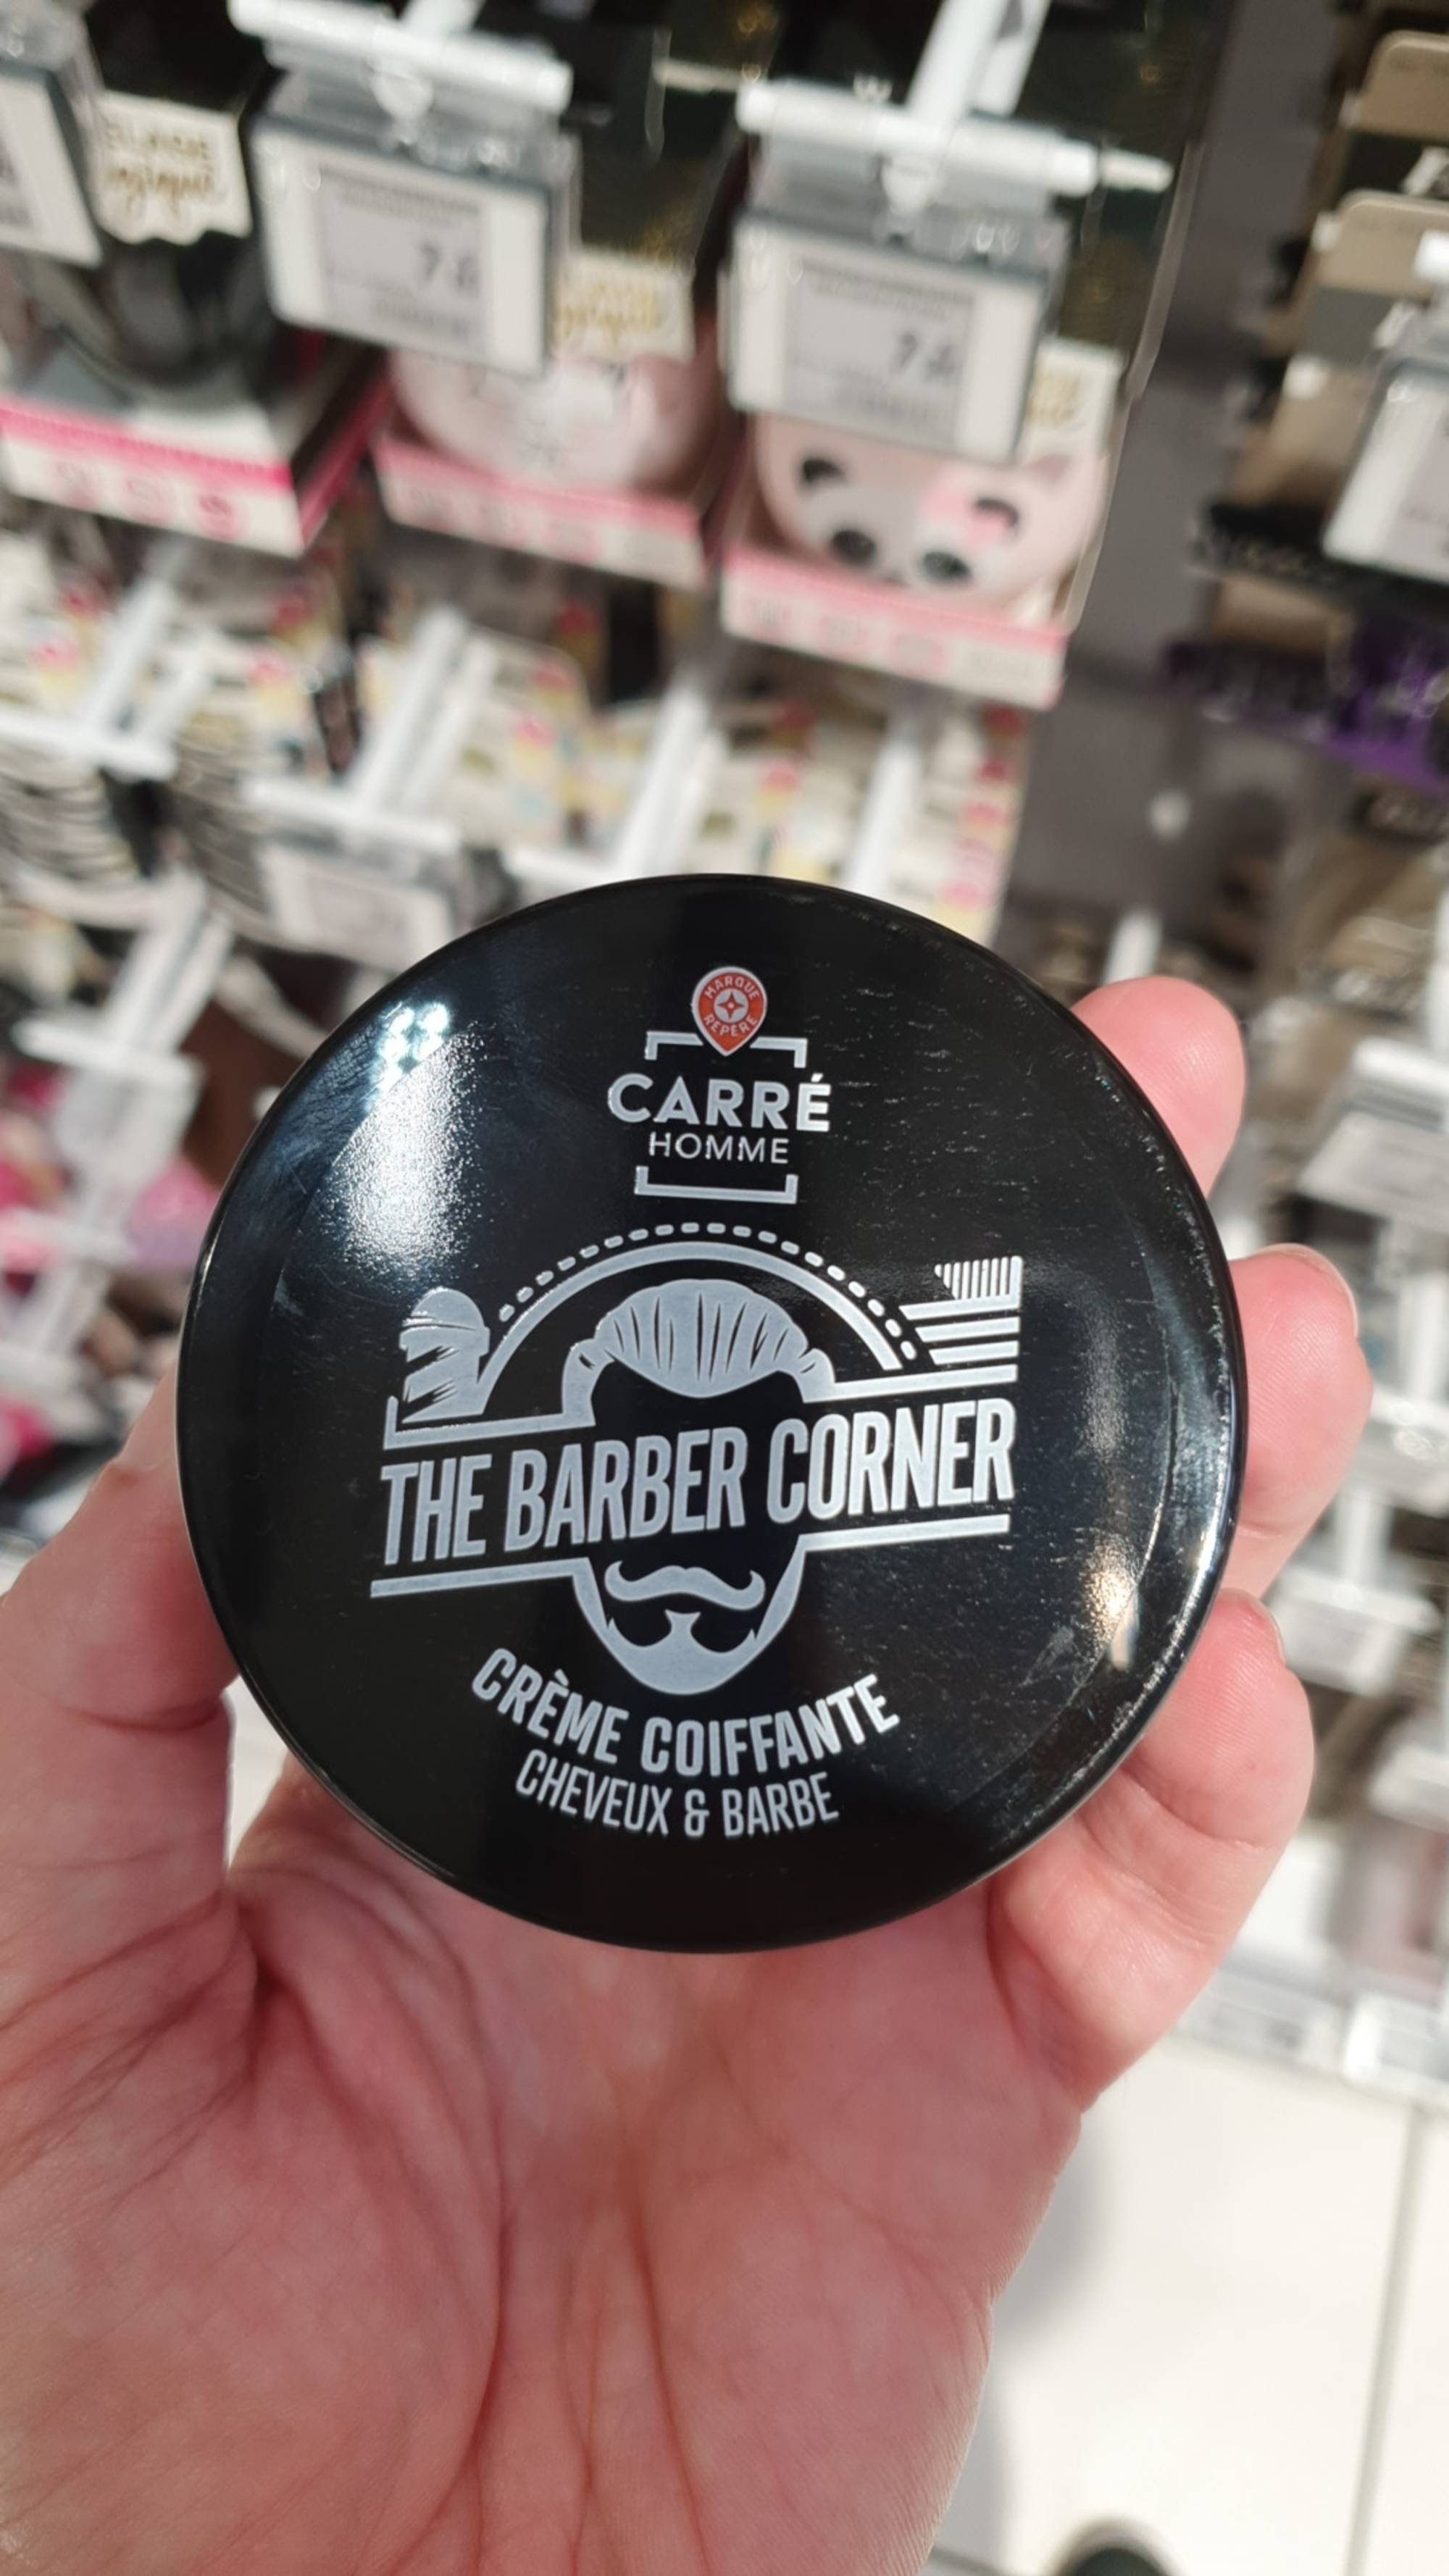 MARQUE REPÈRE - The barber corner - Crème coiffante cheveux & barbe